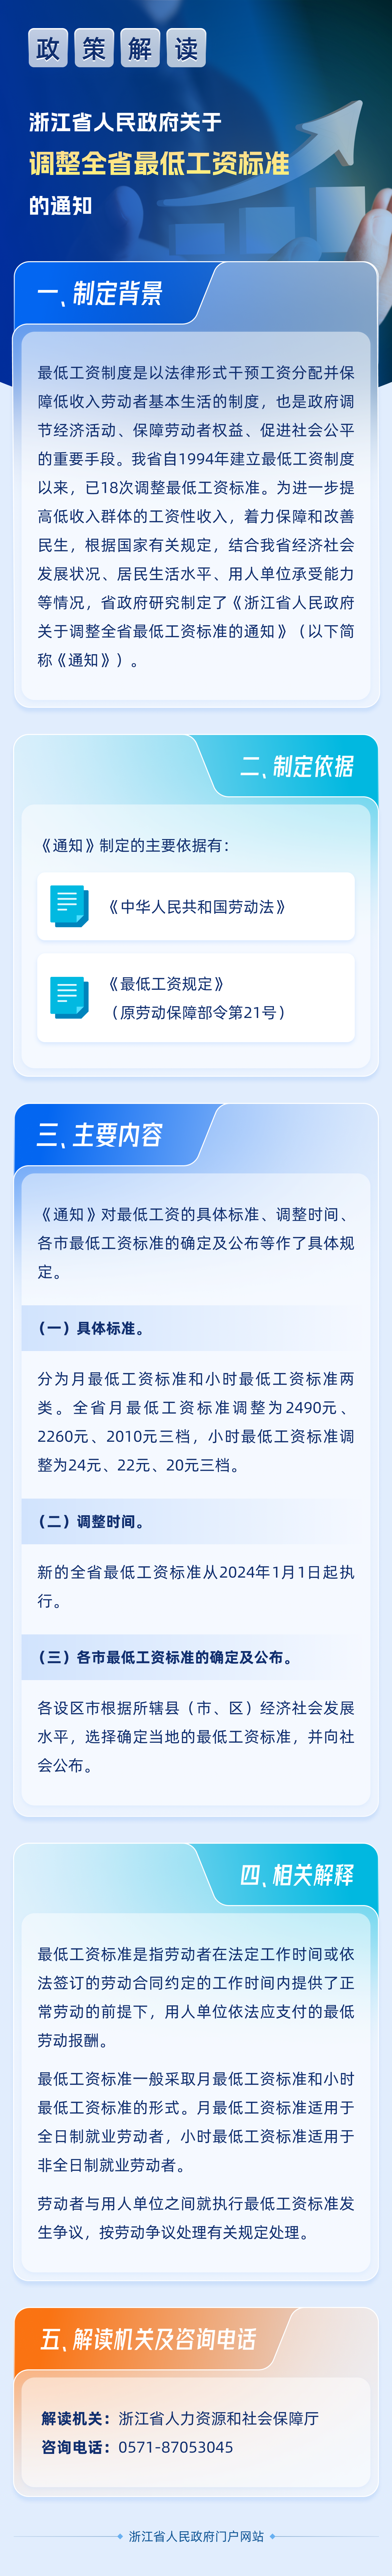 图解丨浙江省人民政府关于调整全省最低工资标准的通知